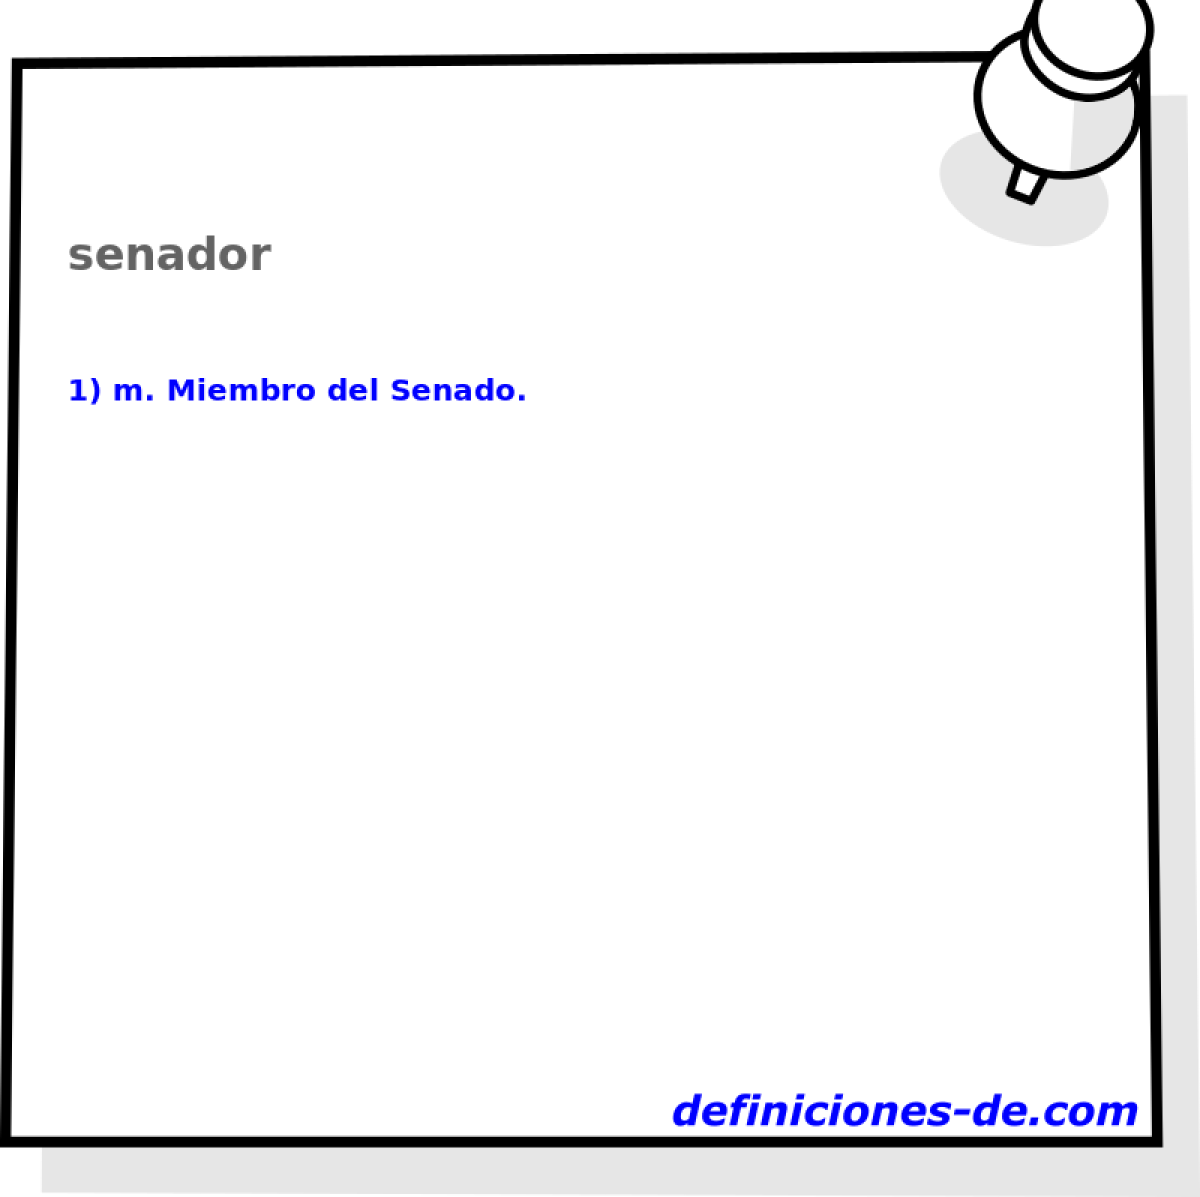 senador 